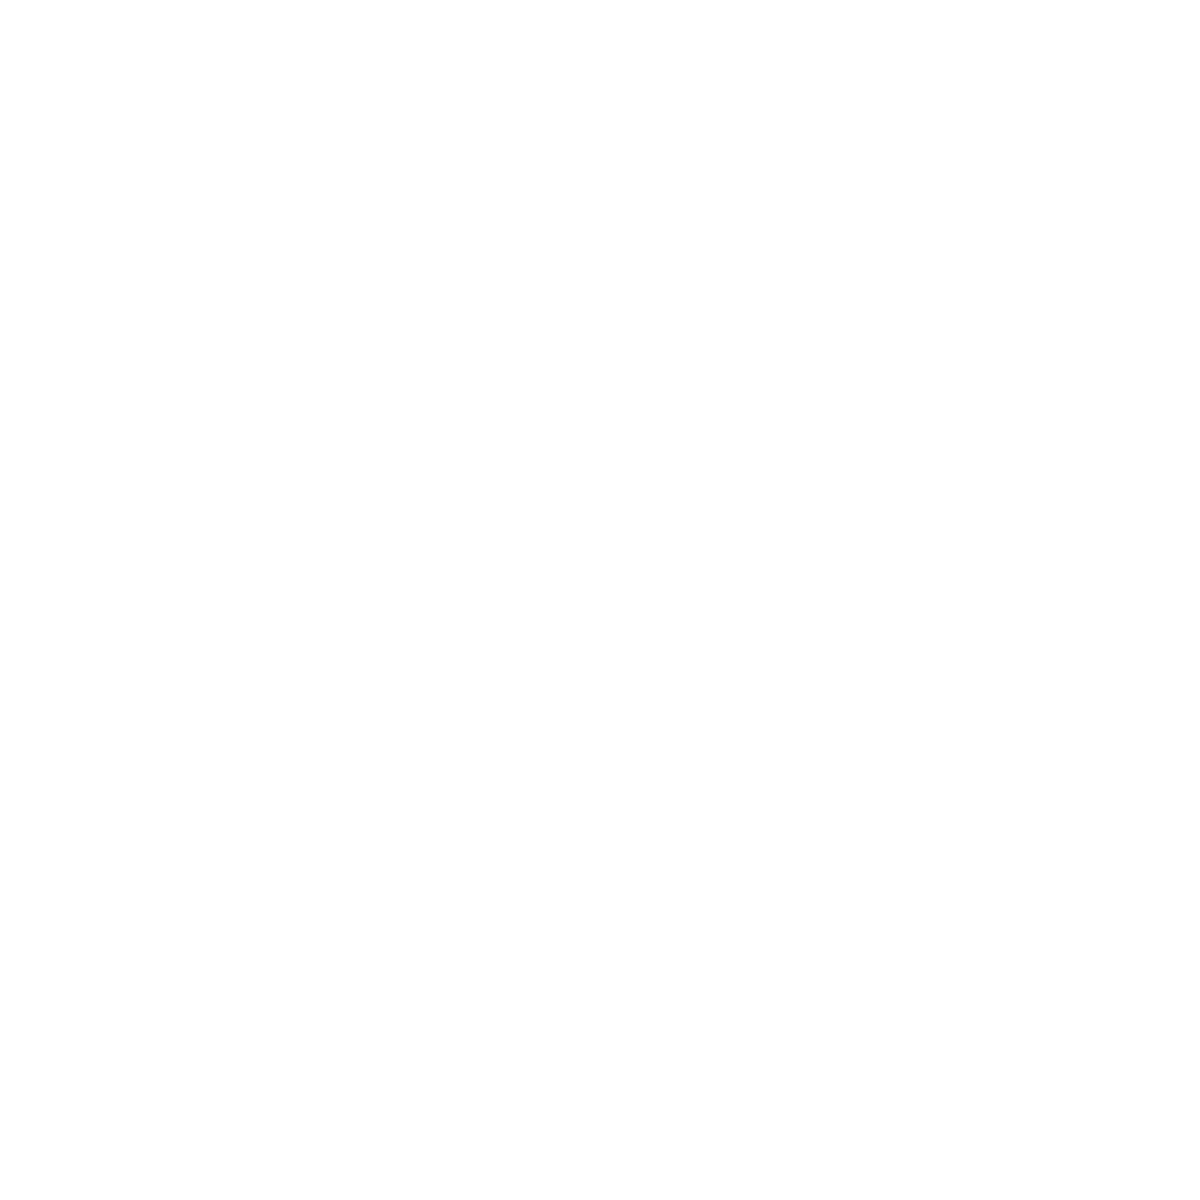 The Yukon Meat Company